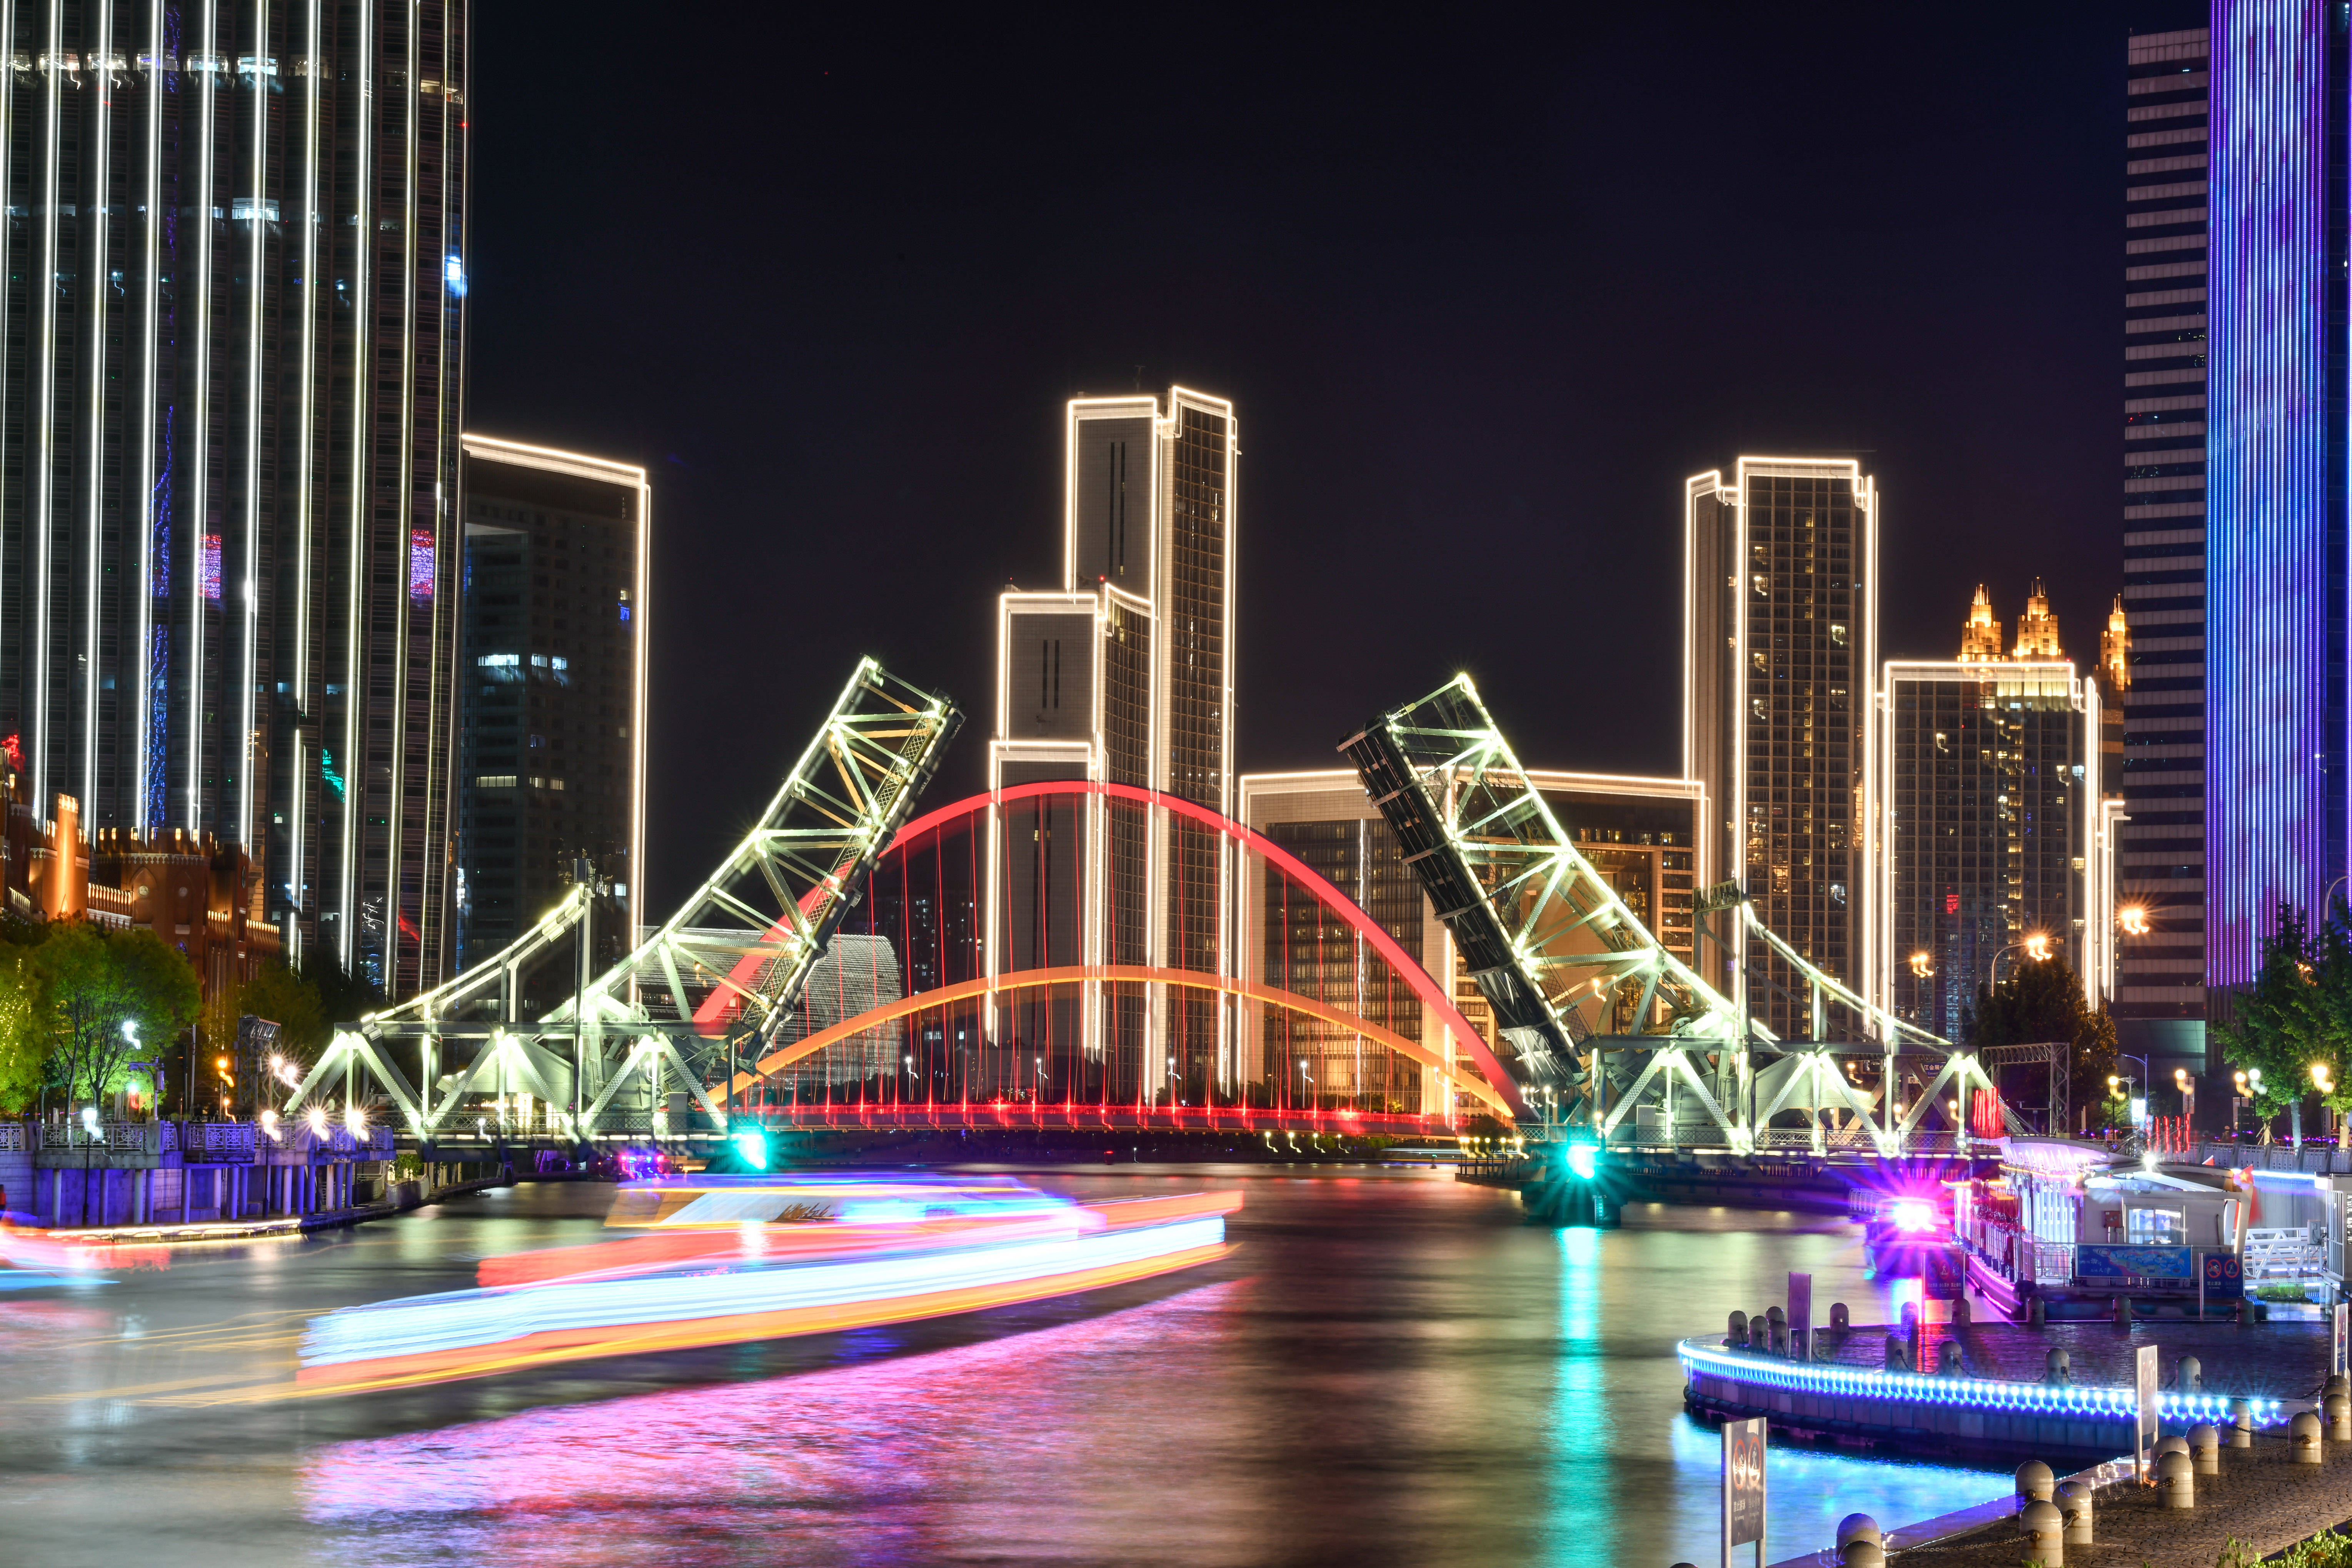 这是5月1日晚拍摄的天津解放桥开启夜景(长时间曝光照片).